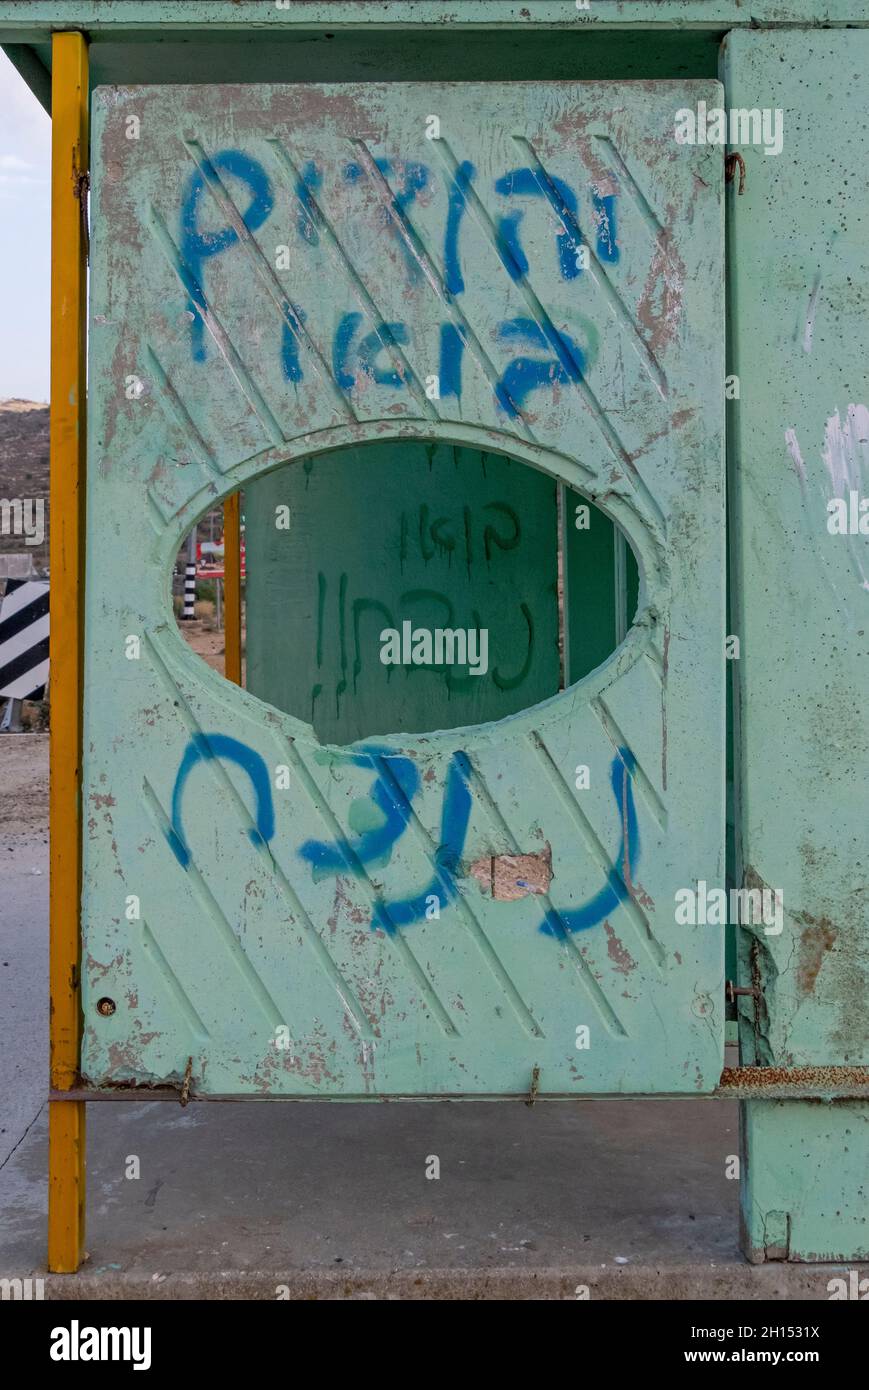 Eine Bushaltestelle mit hebräischen Schriftschnittichen, die wahrscheinlich von jüdischen Siedlern aus israelischen Siedlungen in der Nähe besprüht wird, lautet „Juden, lasst uns gewinnen“, die sich auf dem Highway 60, einer Süd-Nord-Intercity-Straße im Westjordanland und in Israel, befindet, definiert durch viele Schussangriffe palästinensischer Militanter auf israelische Zivilisten und Soldaten. Stockfoto